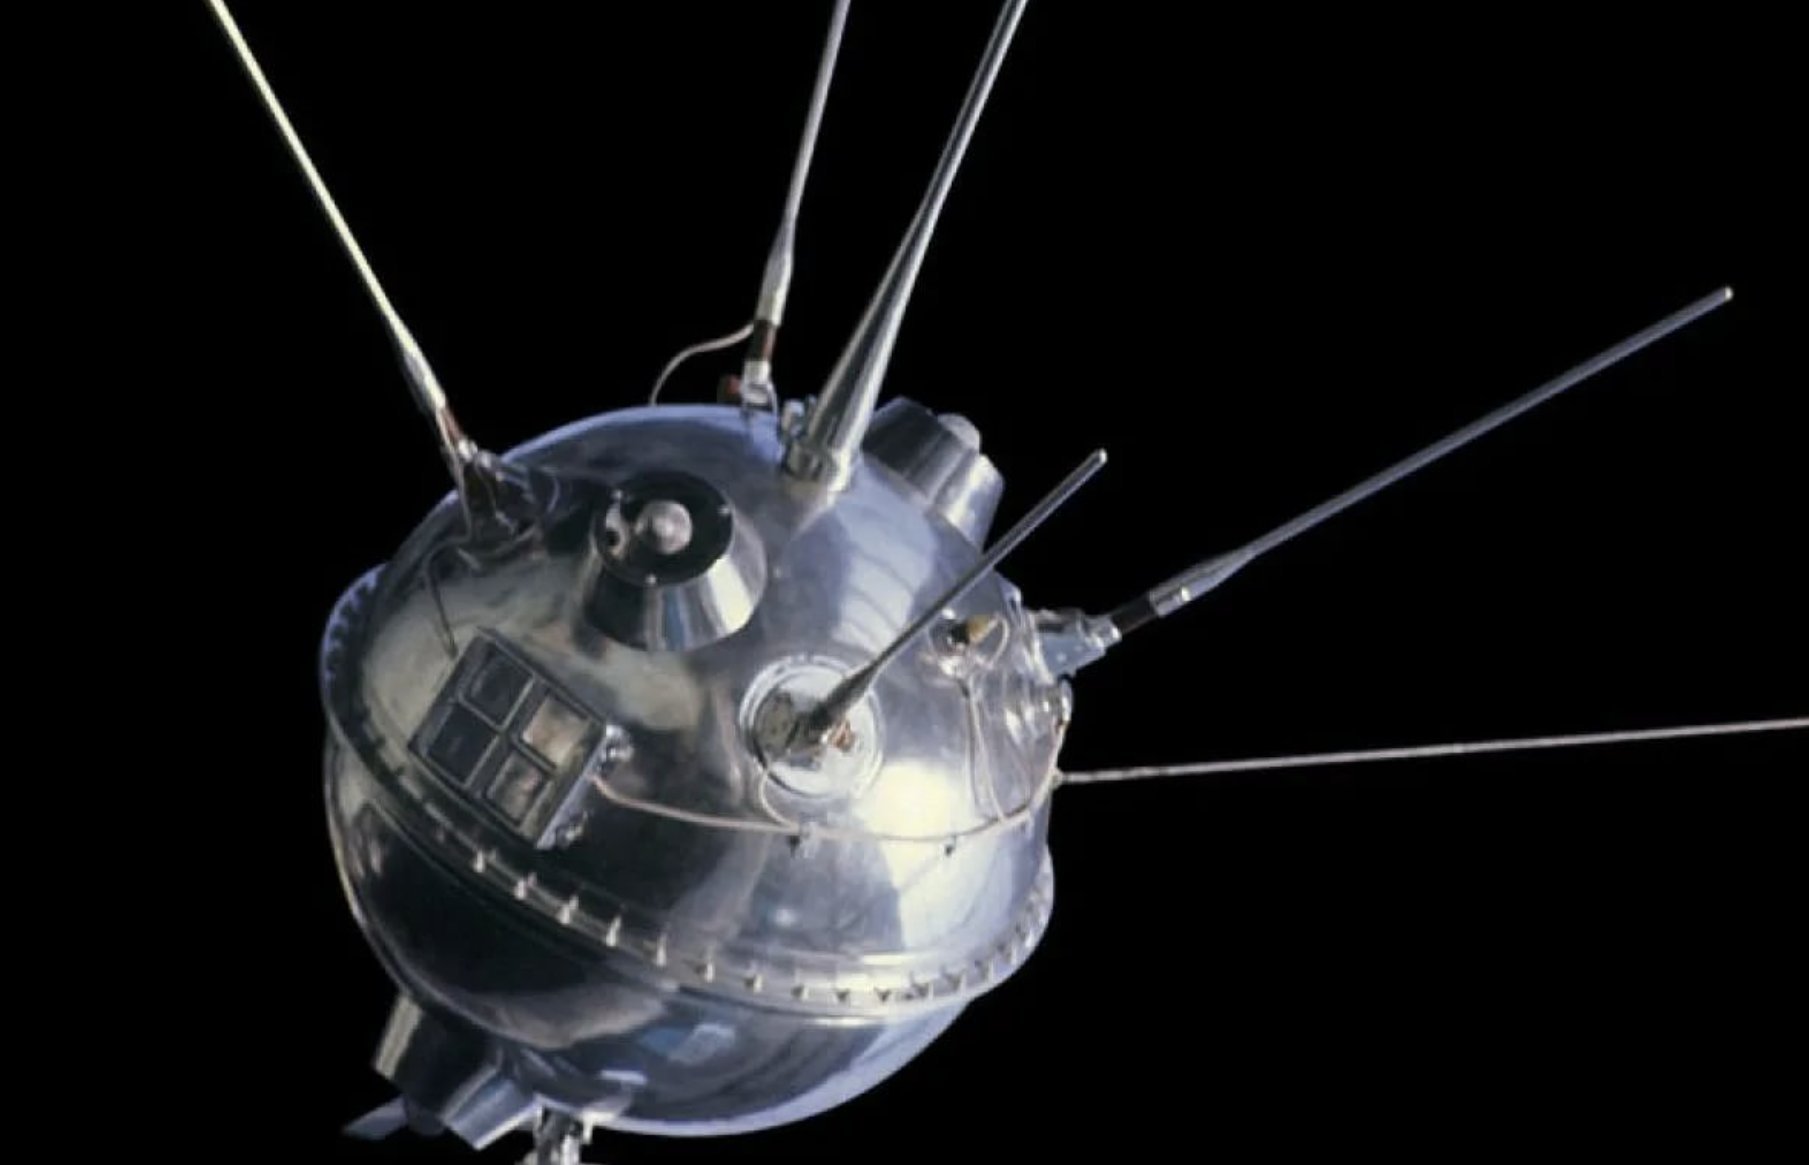 Корабль луна 3. Луна-1 автоматическая межпланетная станция. Луна-2 автоматическая межпланетная станция. Советская станция Луна 1. Автоматическая межпланетная станция «Луна-17», в СССР.